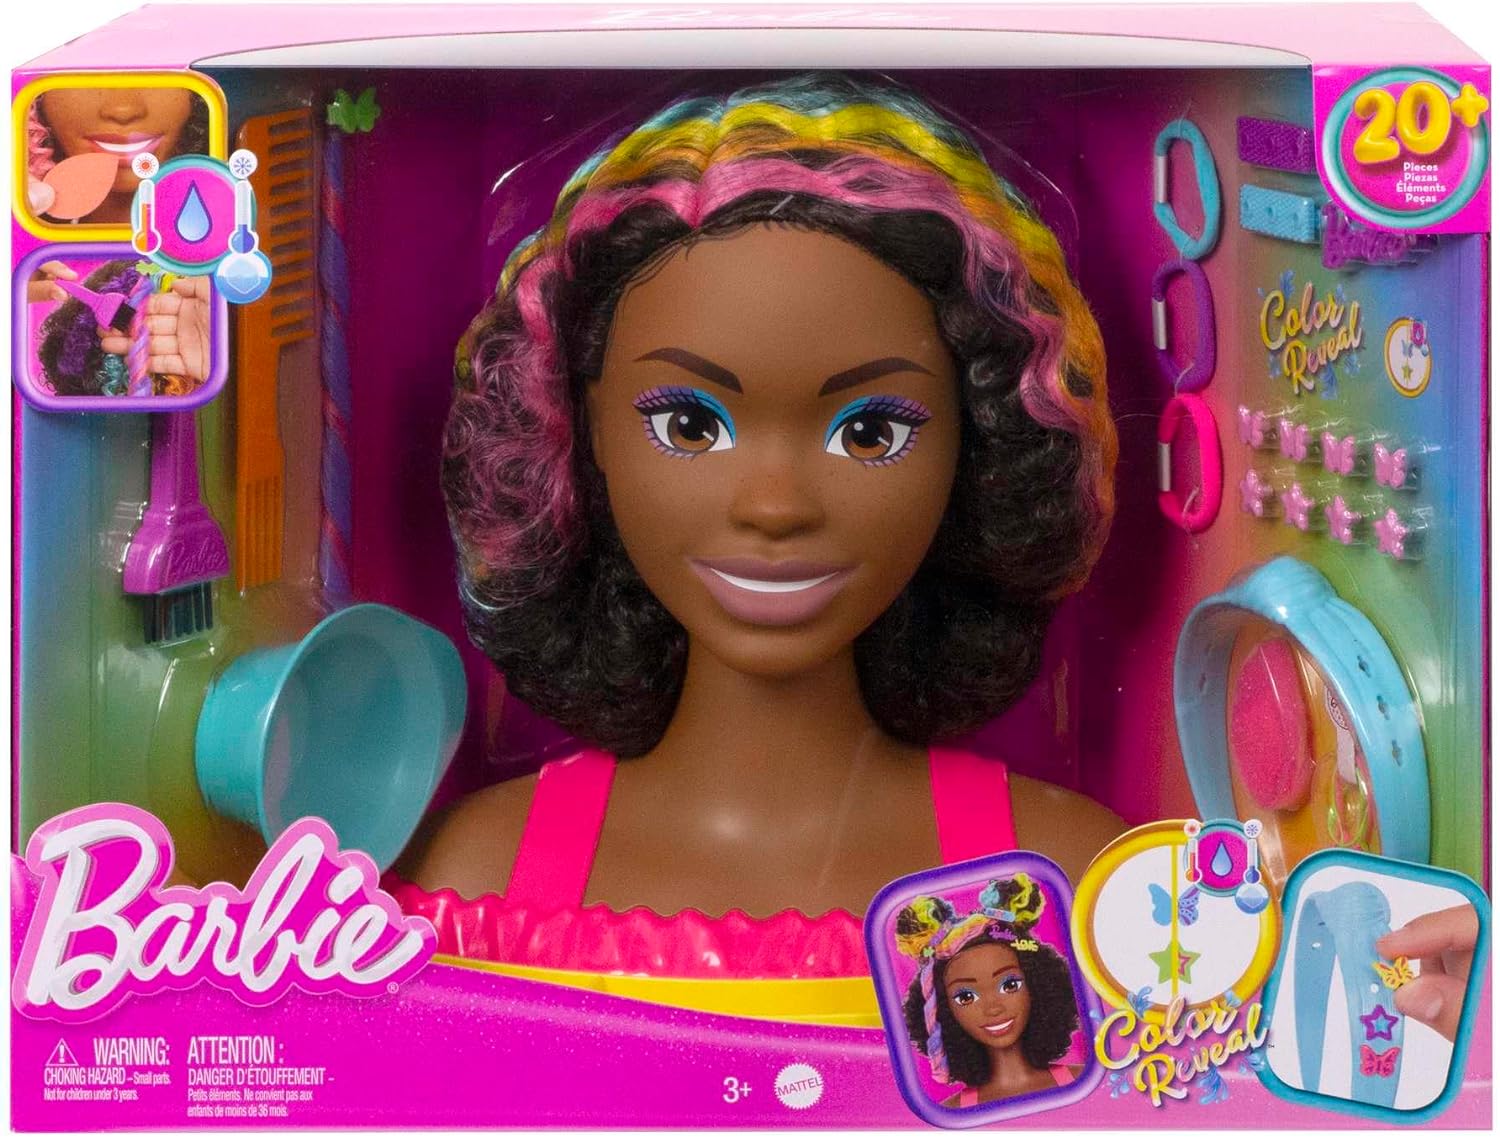 https://m.caverne-des-jouets.com/ori-tete-a-coiffer-metisse-noire-barbie-meches-arc-en-ciel-22-pieces-color-reveal-mattel-25714.jpg